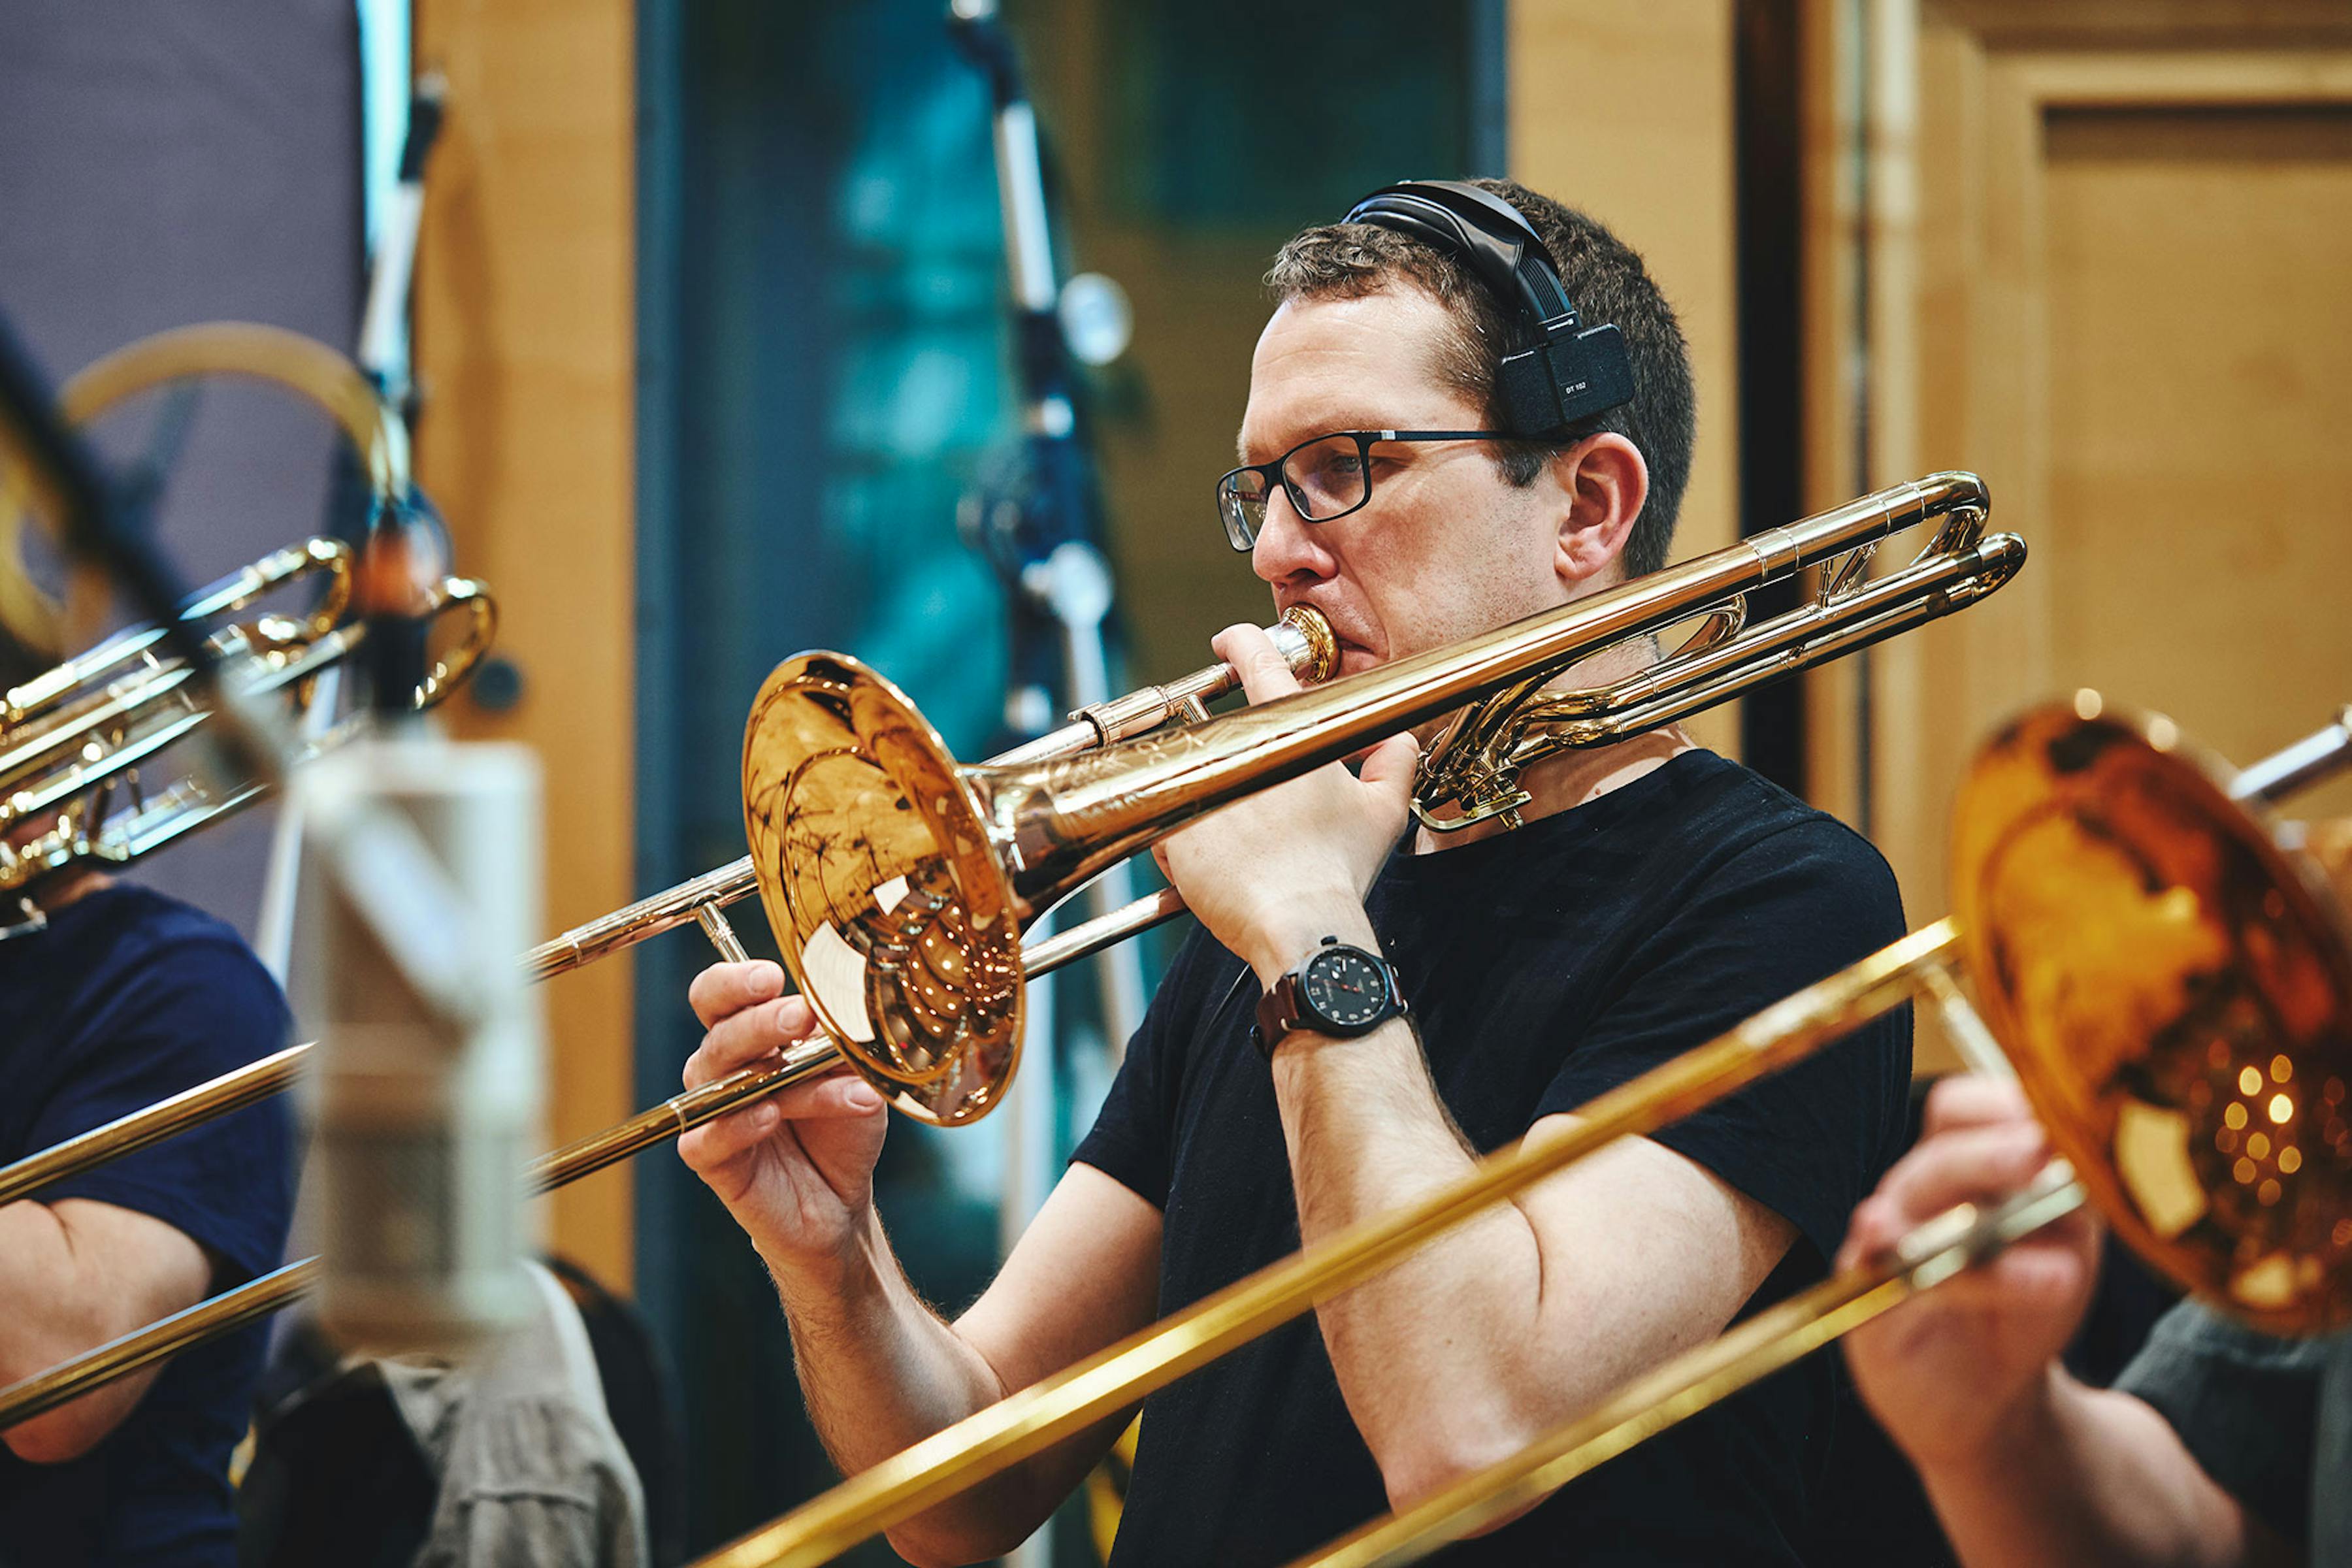 Kepler trombones